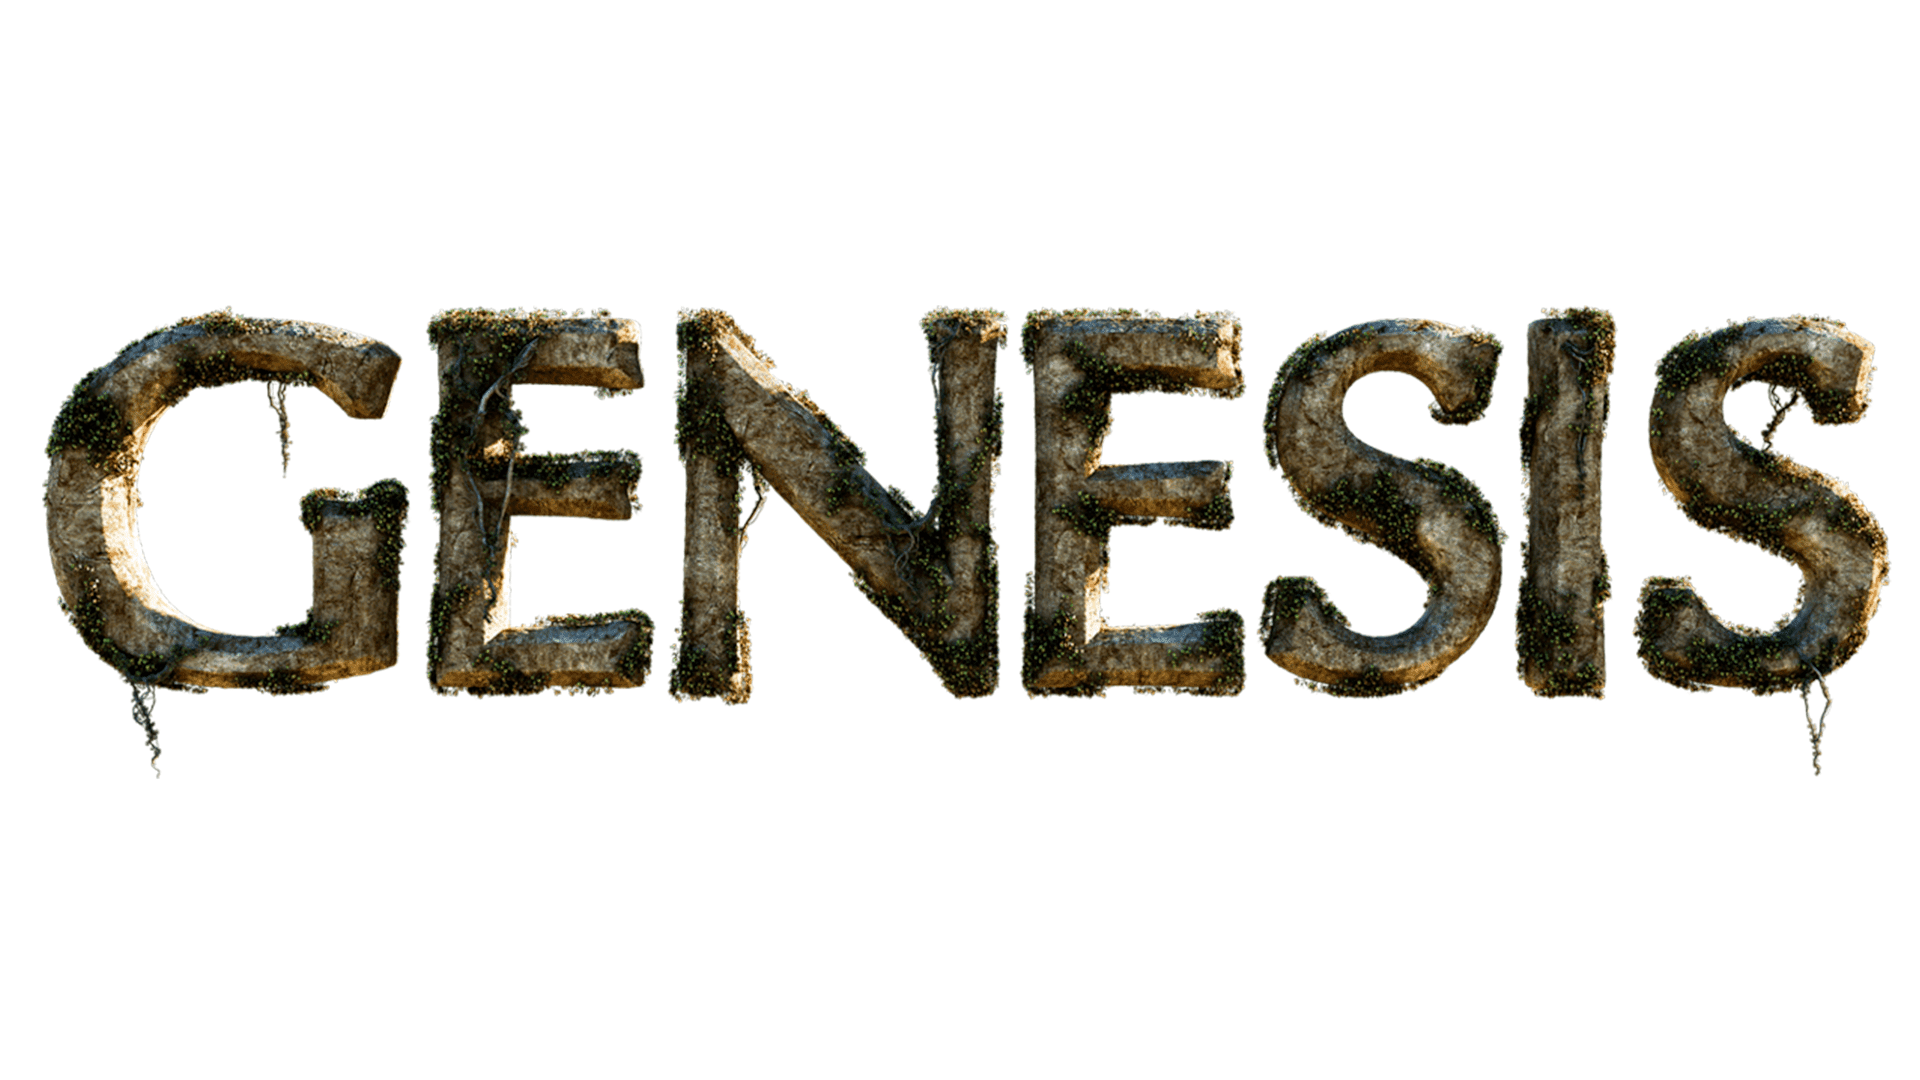 GENESIS MOVIE UPDATE: Exciting News!!!